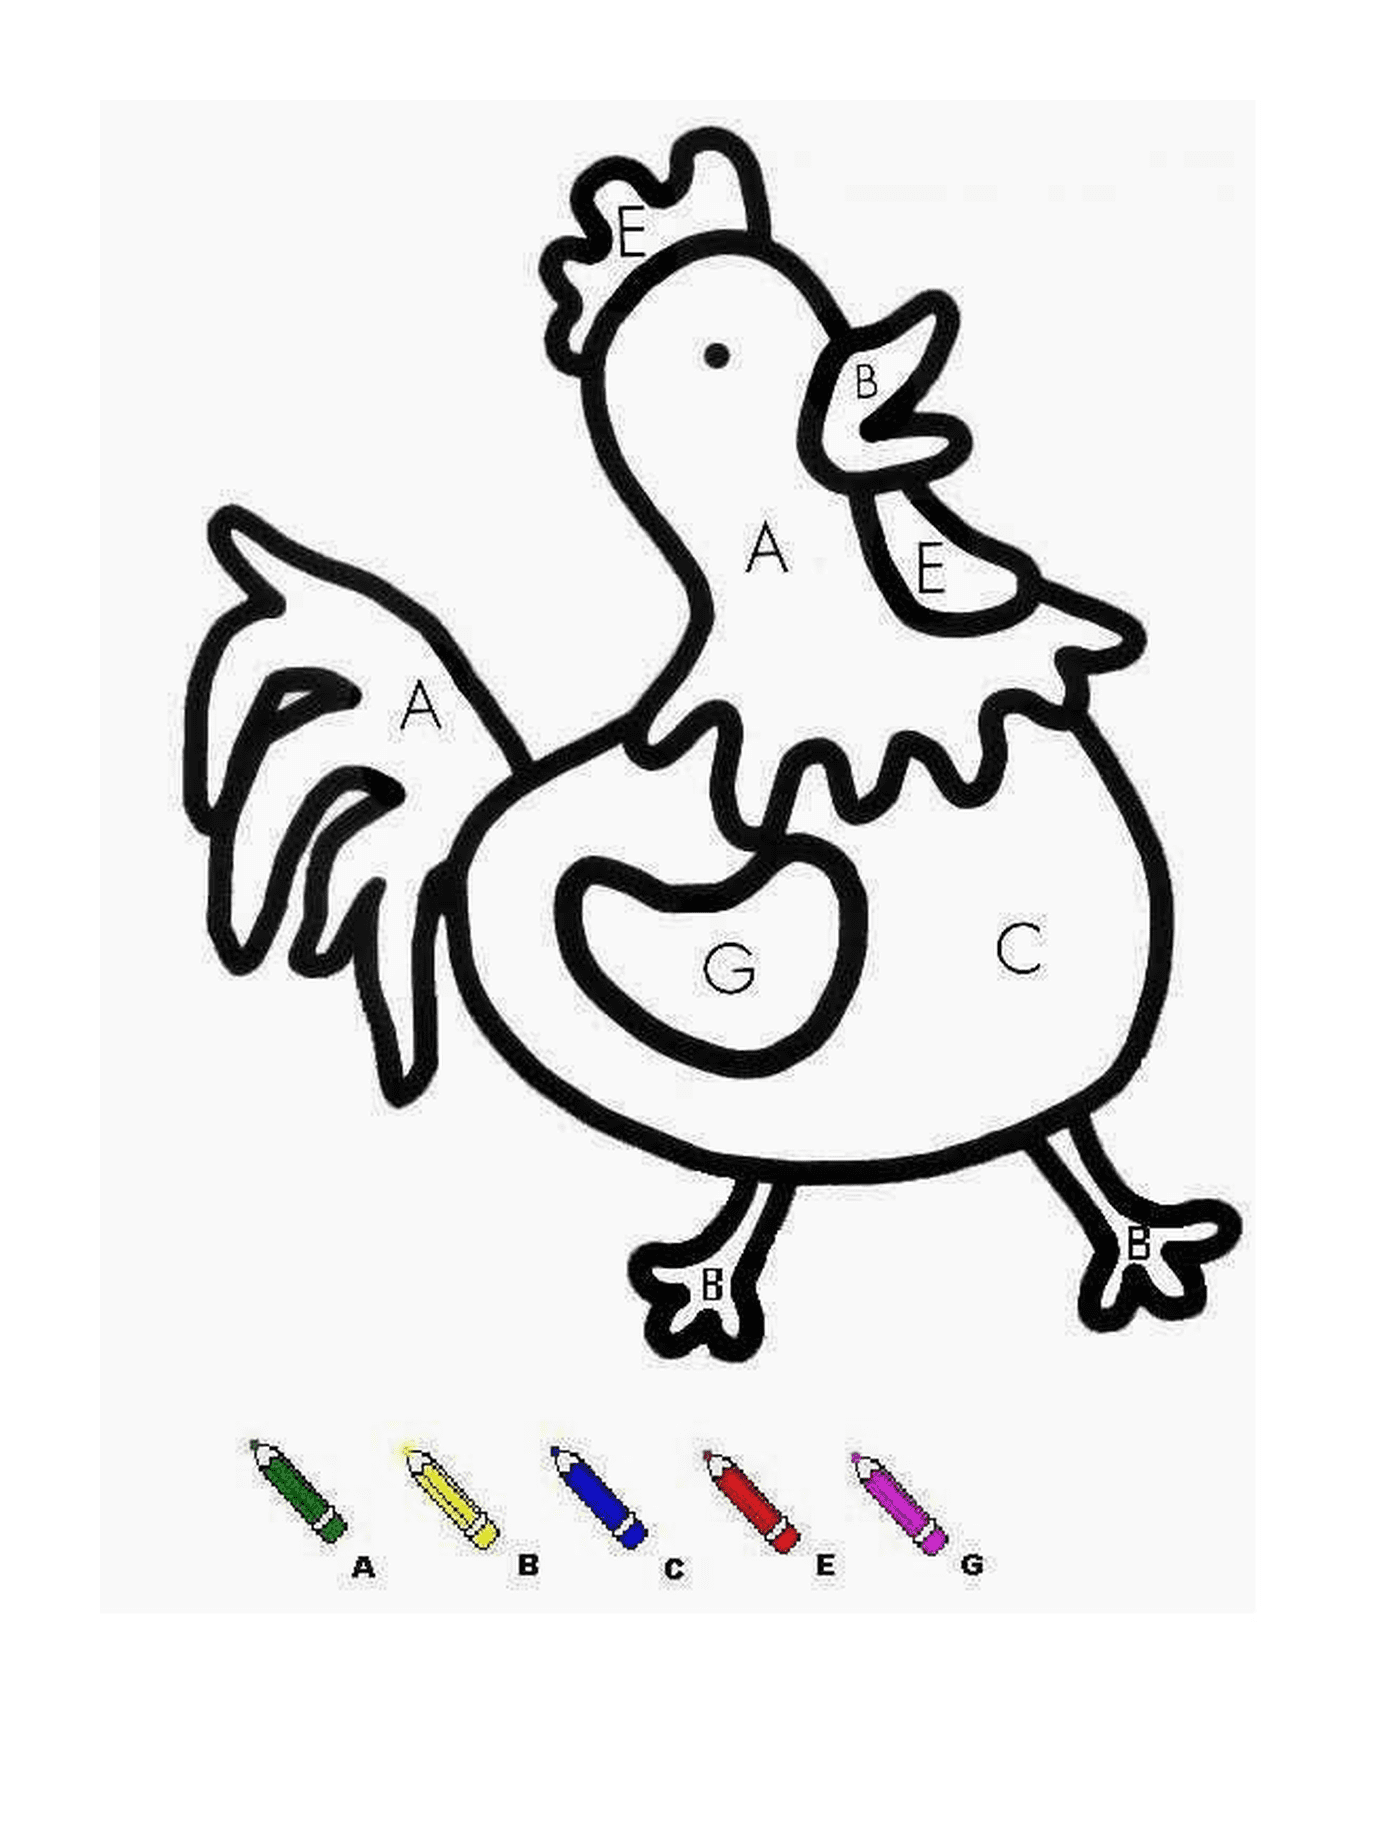  Uma galinha com marcadores coloridos 